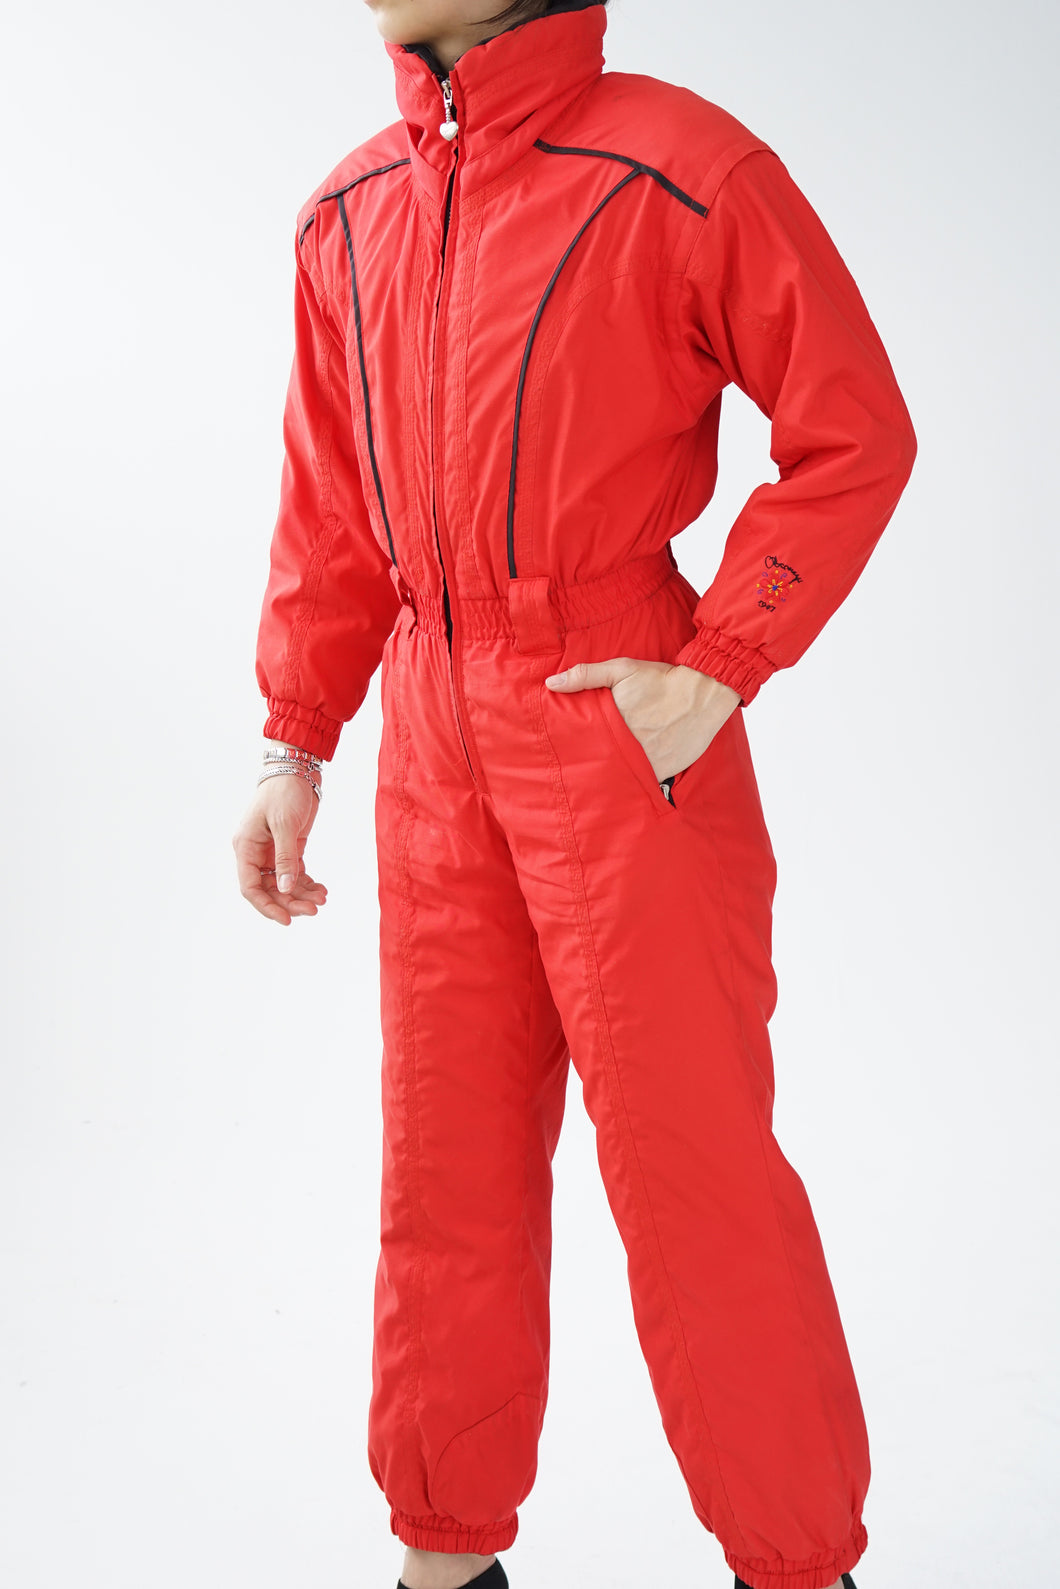 One piece vintage Obermeyer ski suit, snow suit rouge pour petite femme taille 6